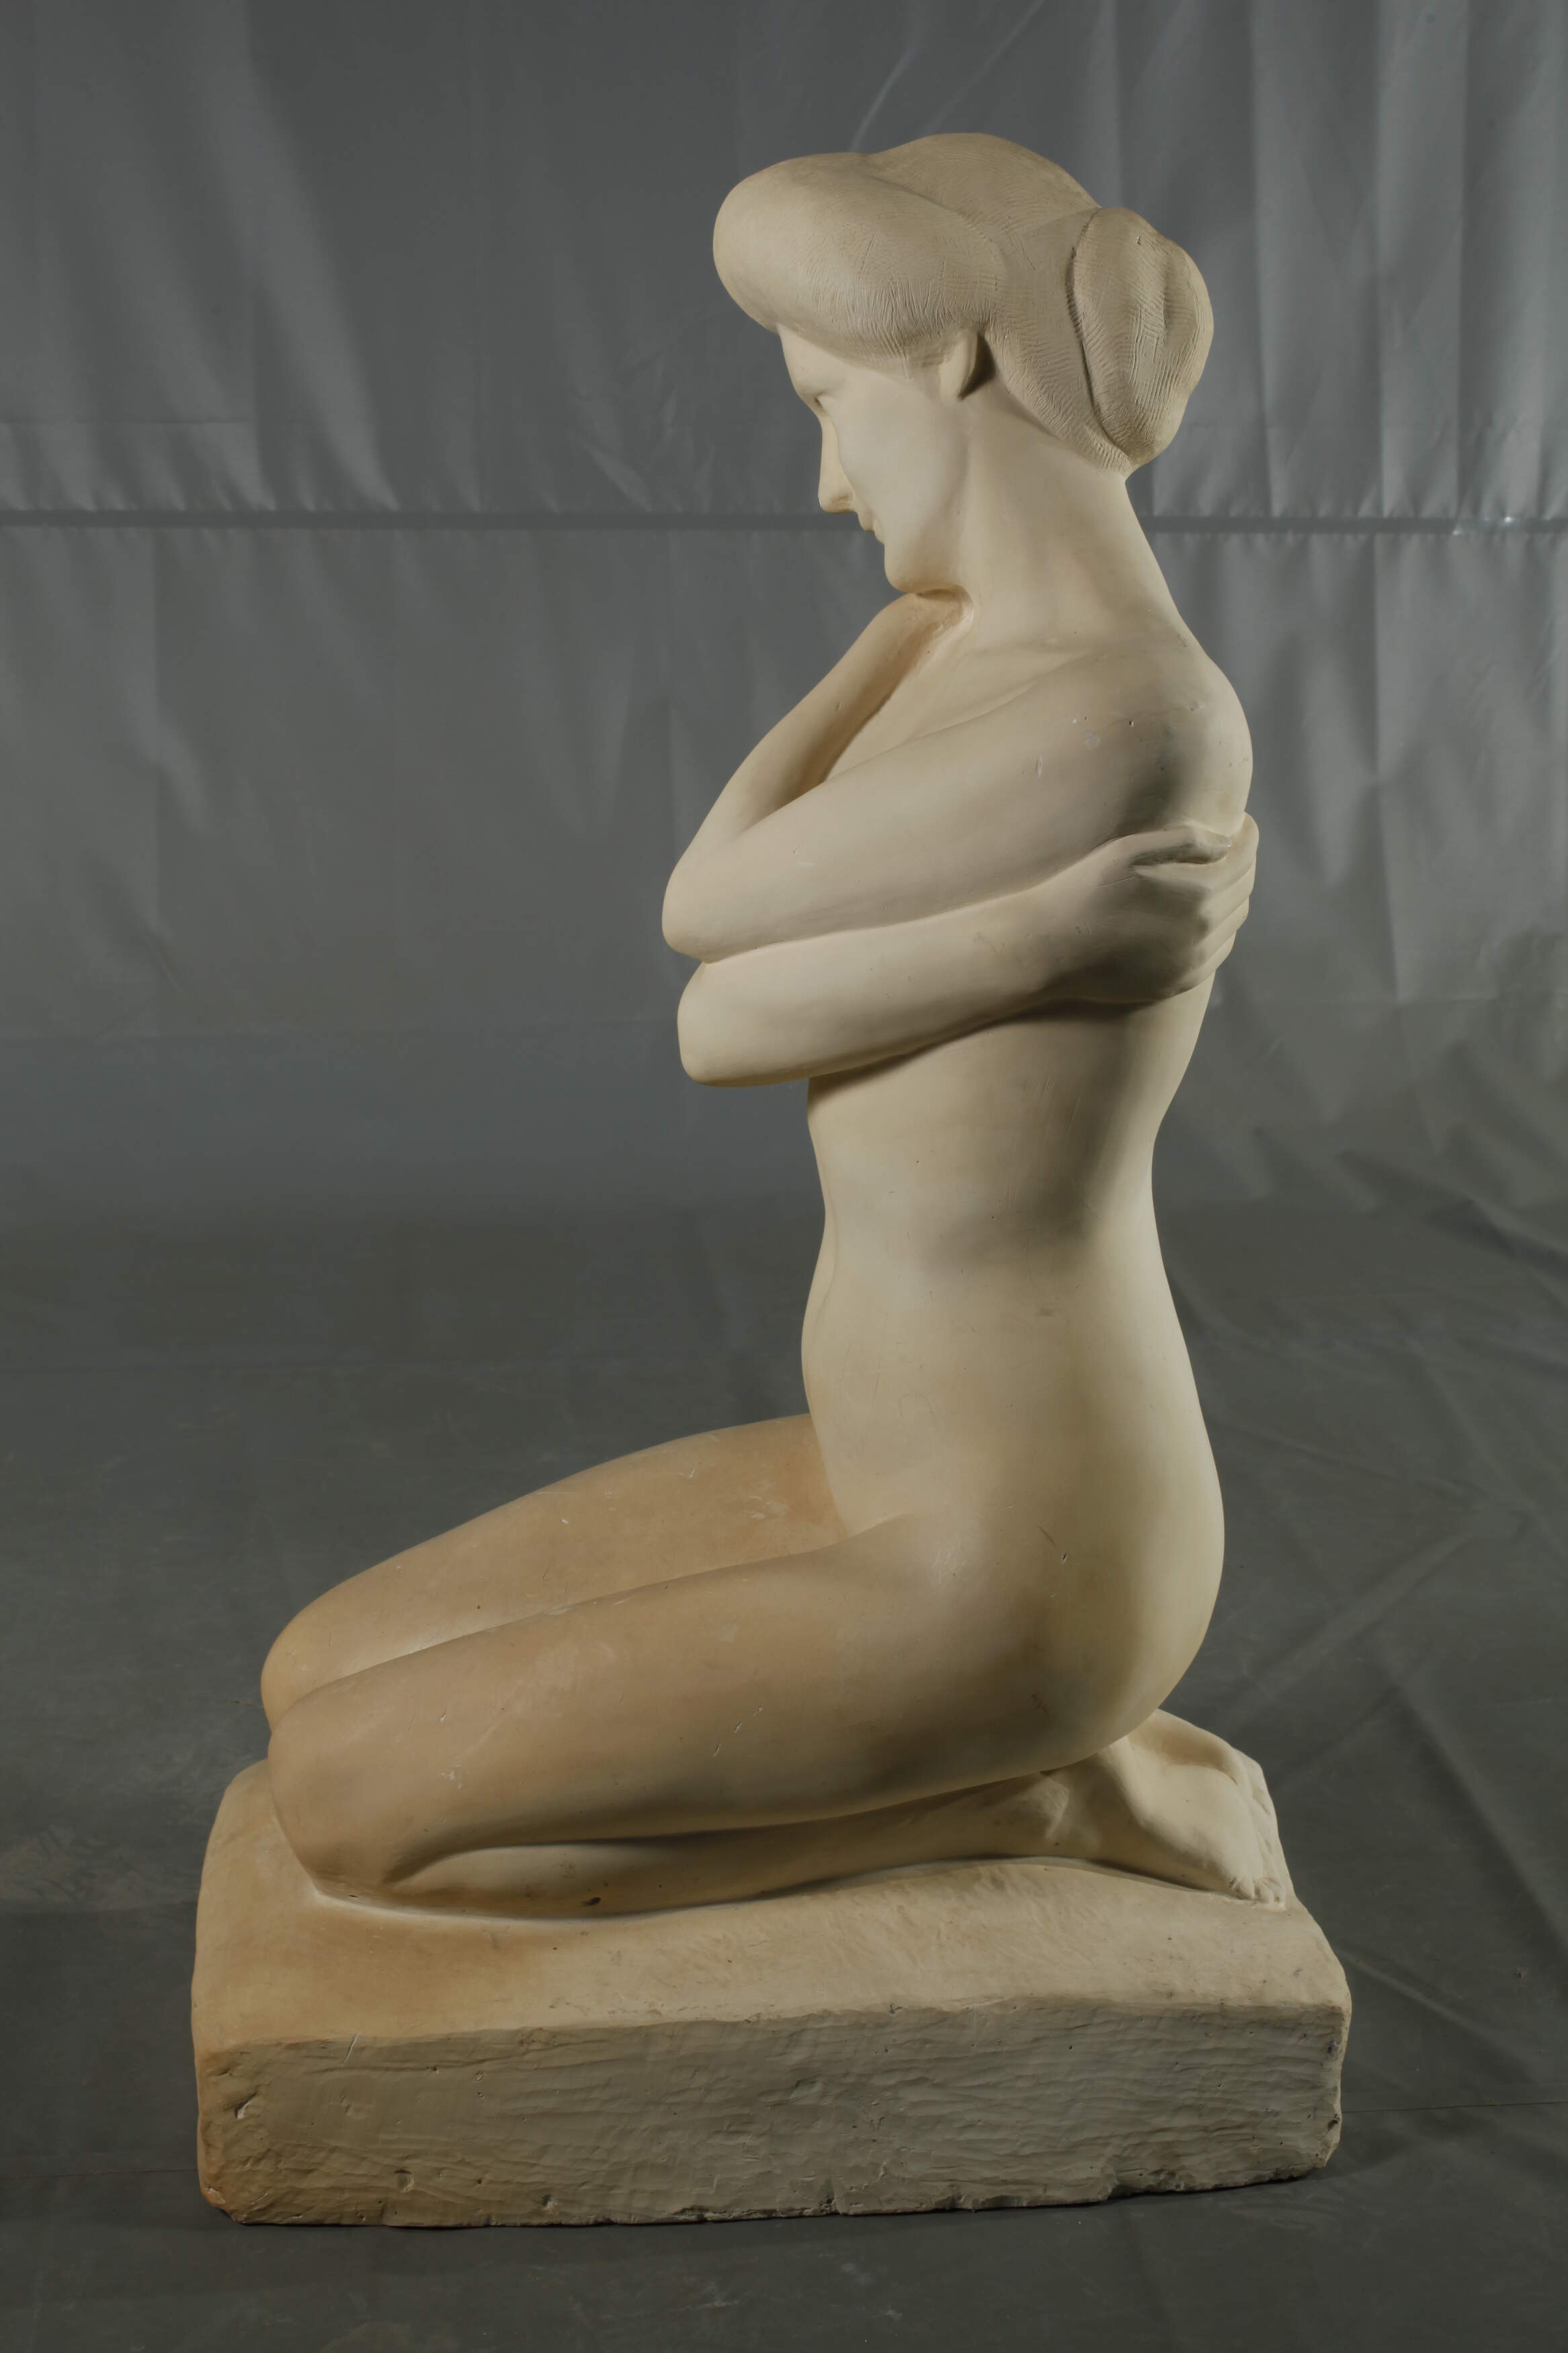 Oversized female nude - Image 4 of 7